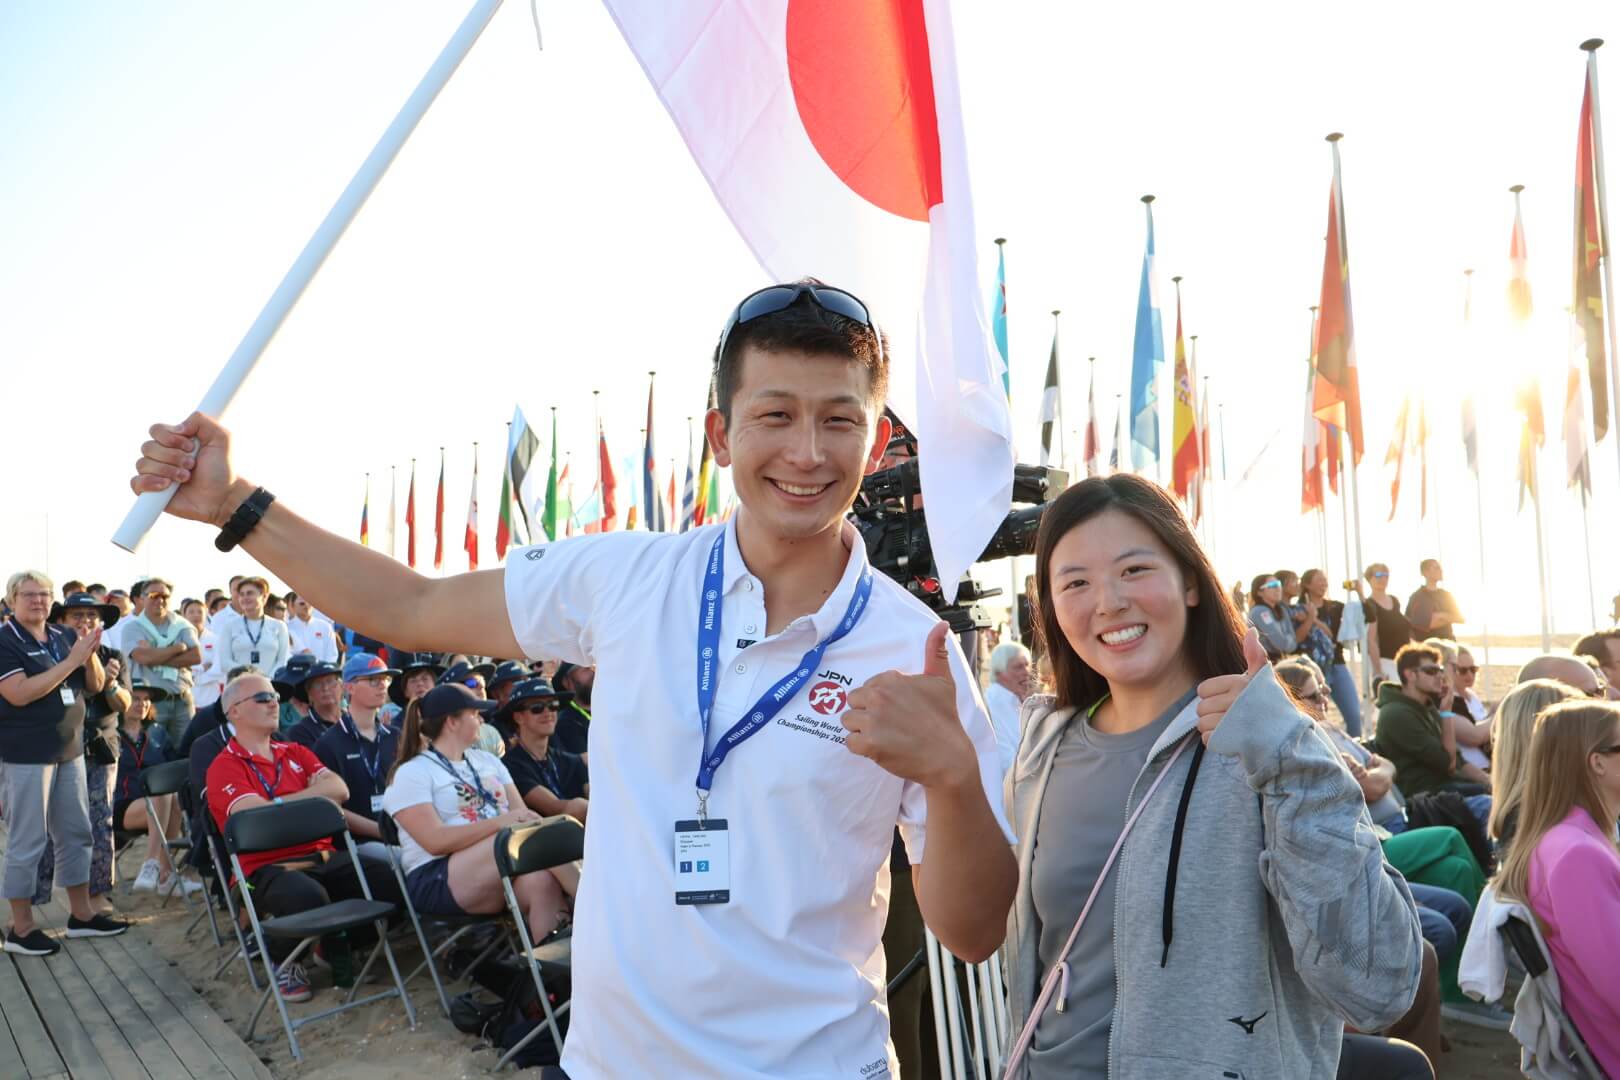 開会式で旗手を務めた丹羽巧選手(左)と市橋愛生選手 ©JSAF